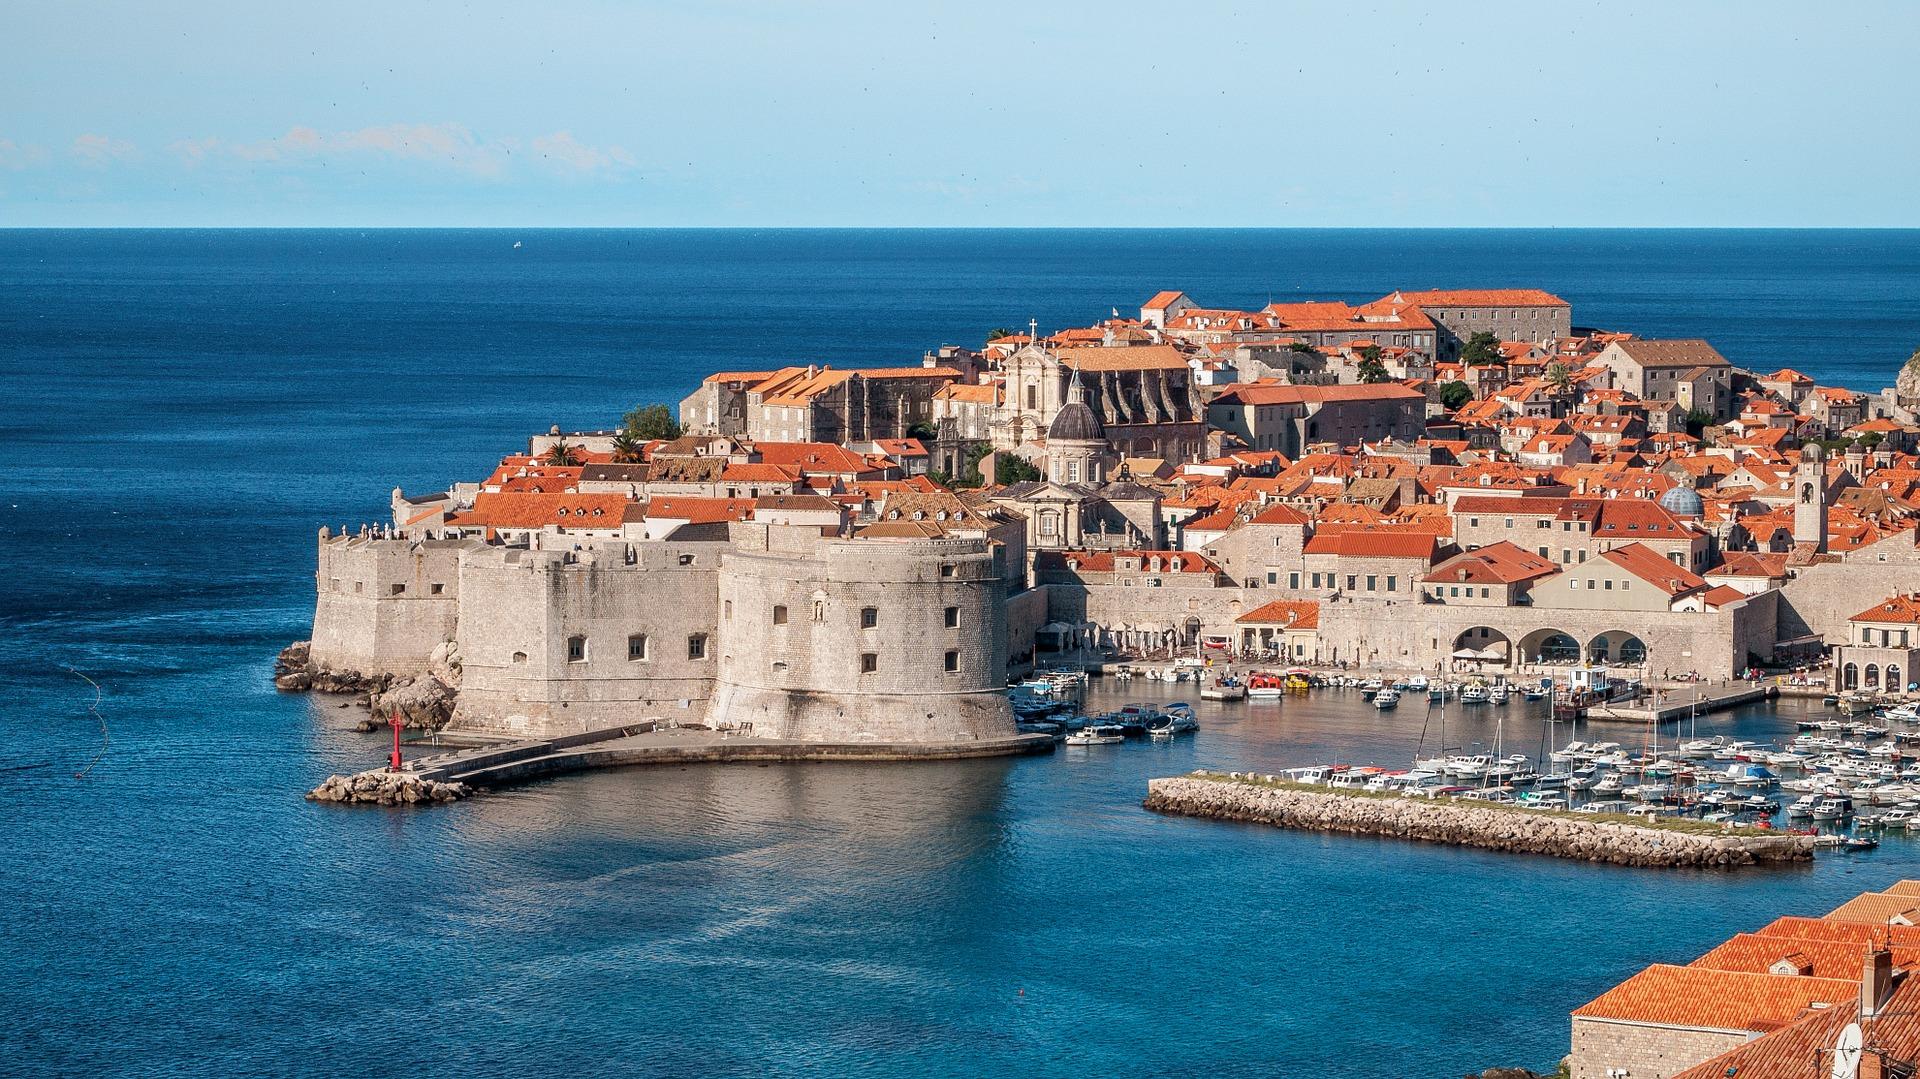 Croatia is it SPLIT into Two? Lost Geographer